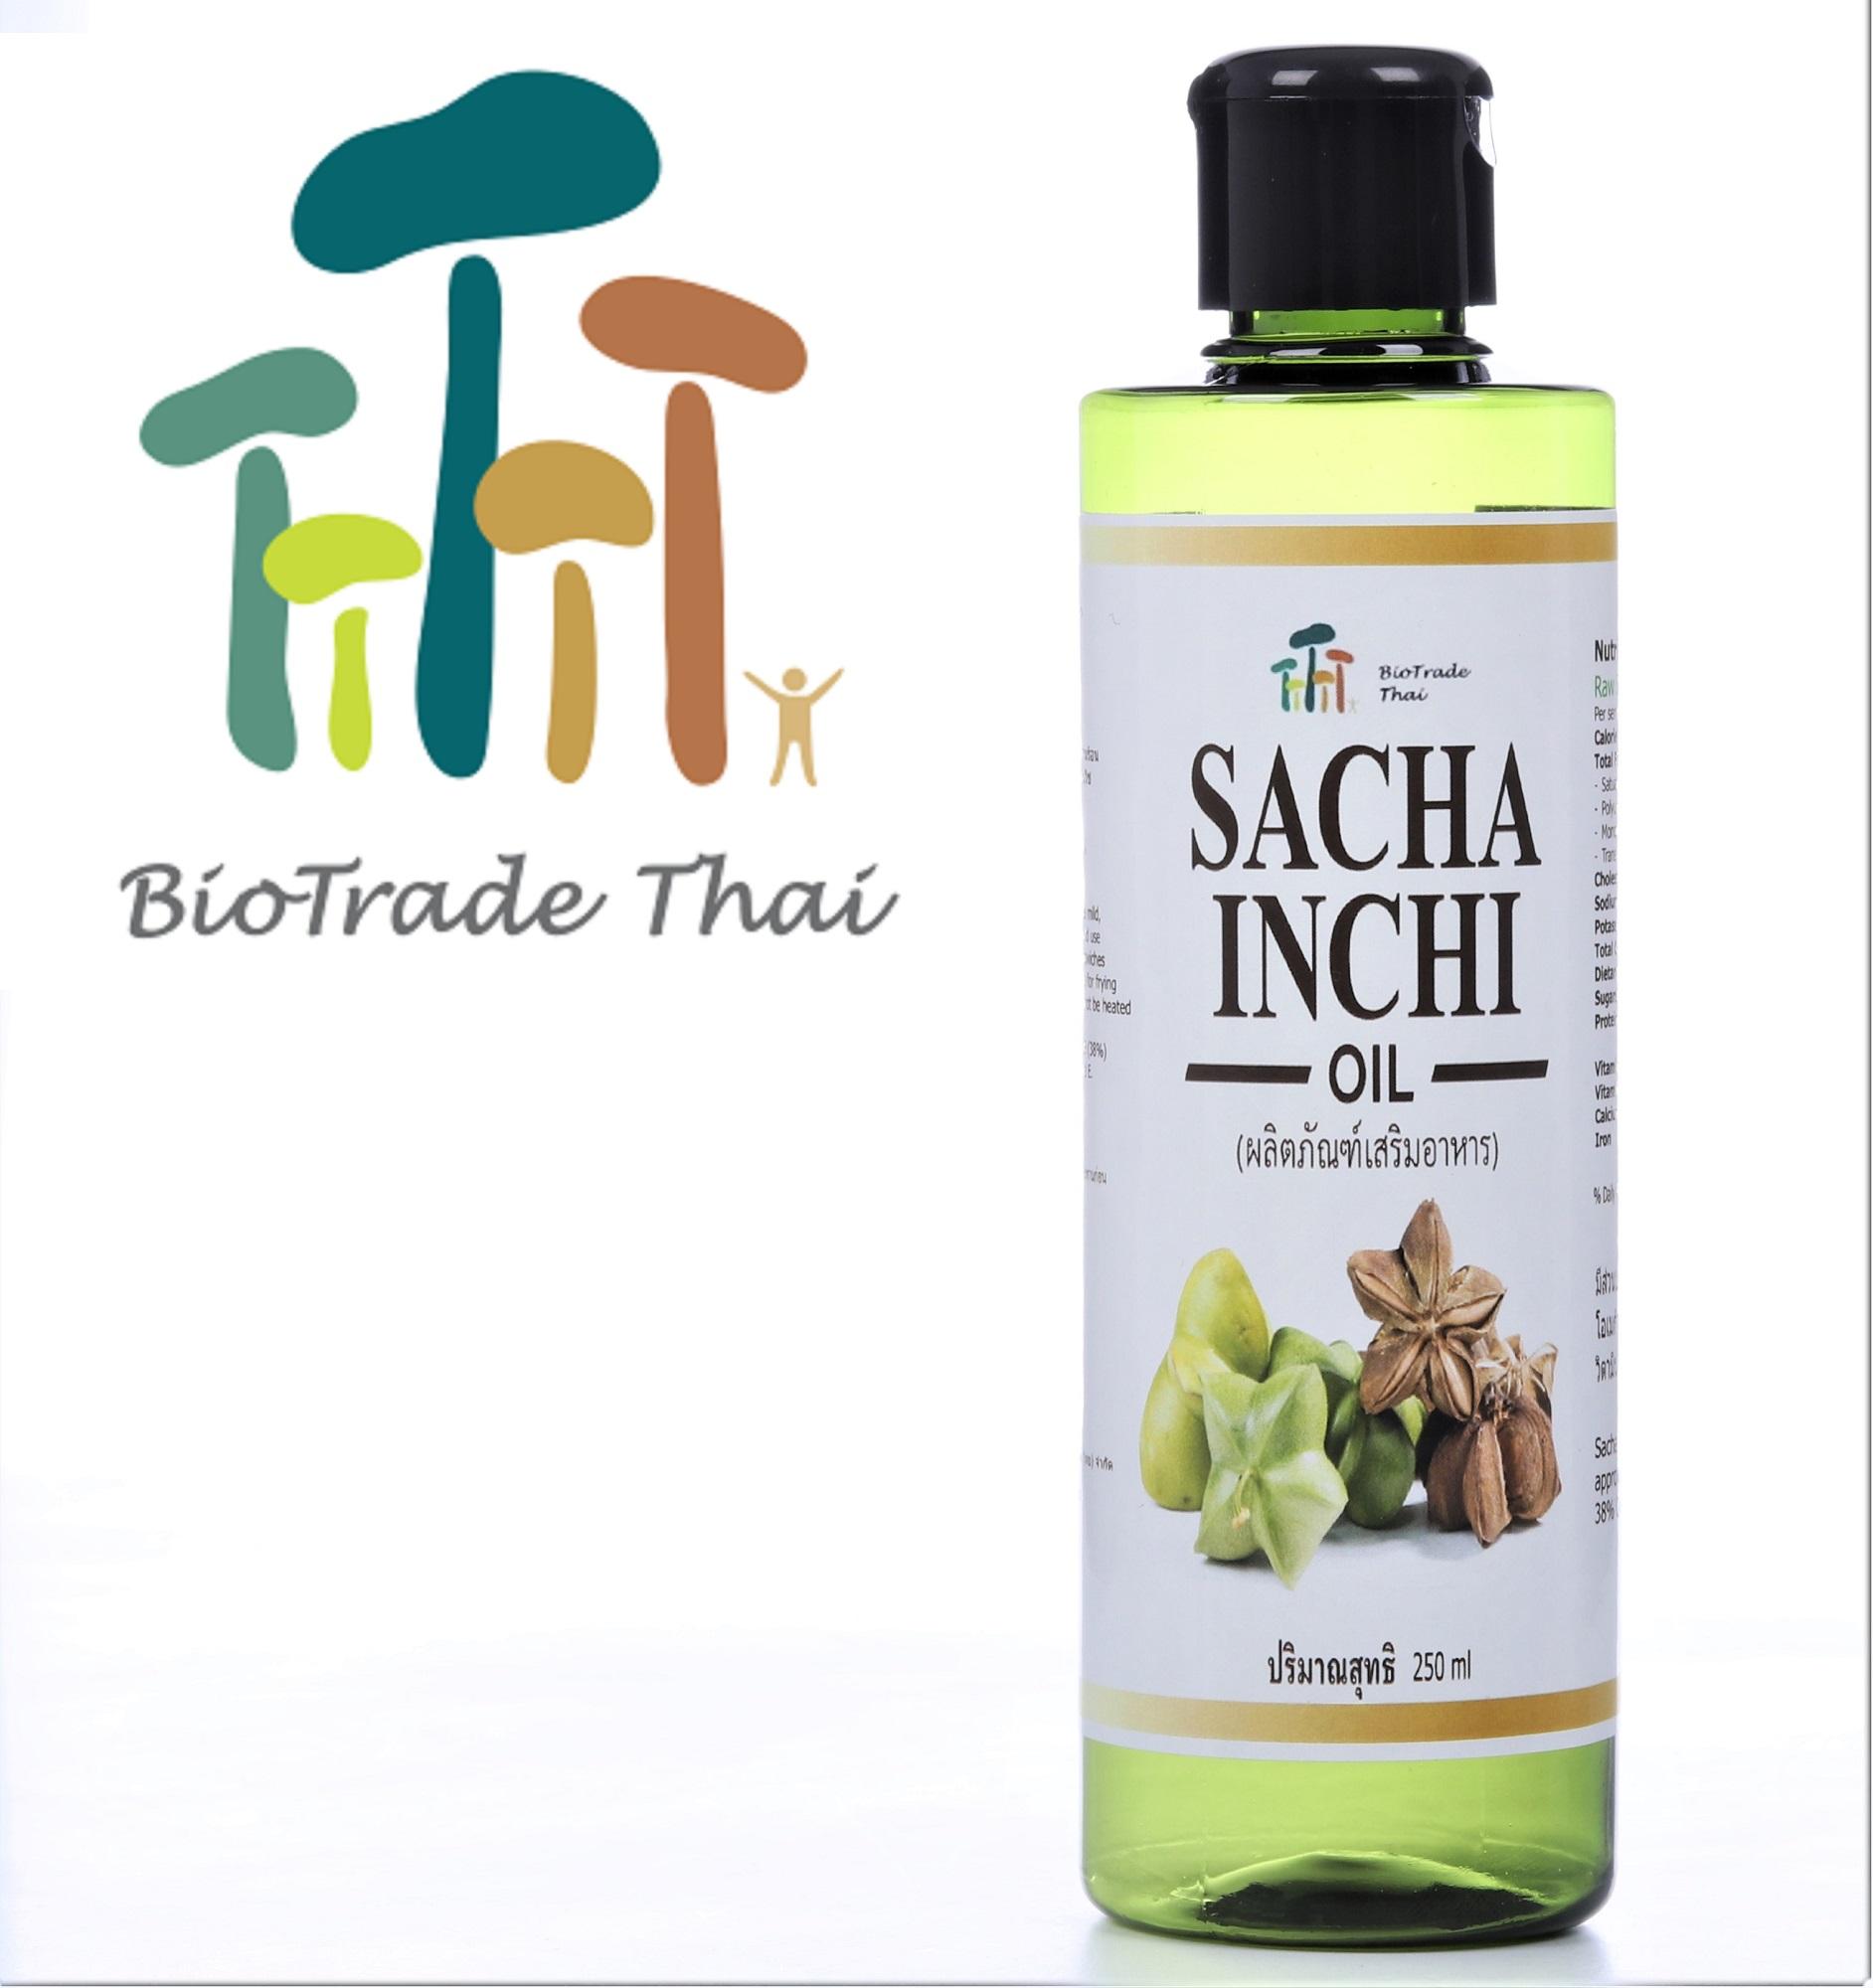 ไบโอเทรด (ไทย) น้ำมัน ถั่วดาวอินคา, สกัดเย็น, ไม่มีสิ่งอื่นเจือปน 1 ขวด, 1 x 250ml; น้ำมันถั่วดาวอินคาสกัดเย็นชนิด; 1x Biotrade Thai Sacha Inchi oil 250 ml, cold pressed, virgin (1 bottle of 250 ml)